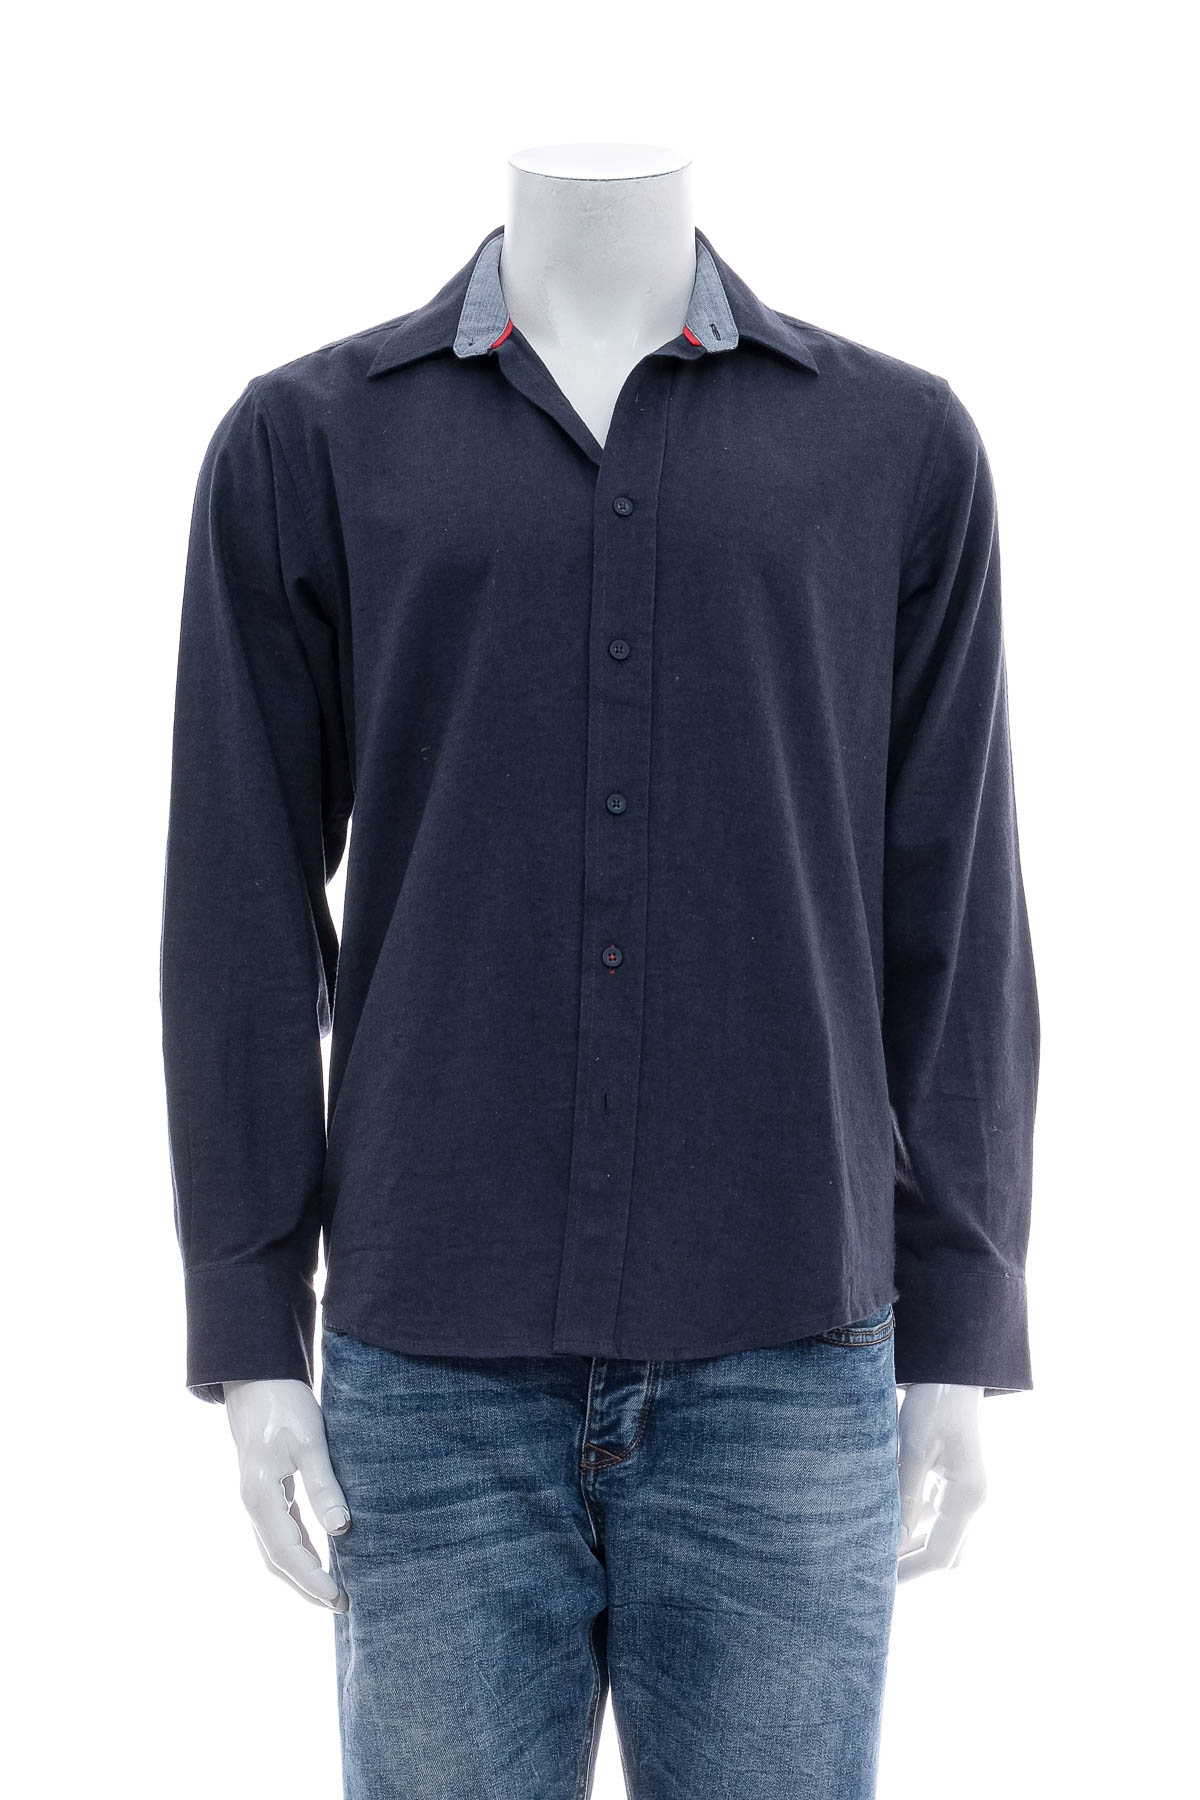 Men's shirt - Watsons - 0